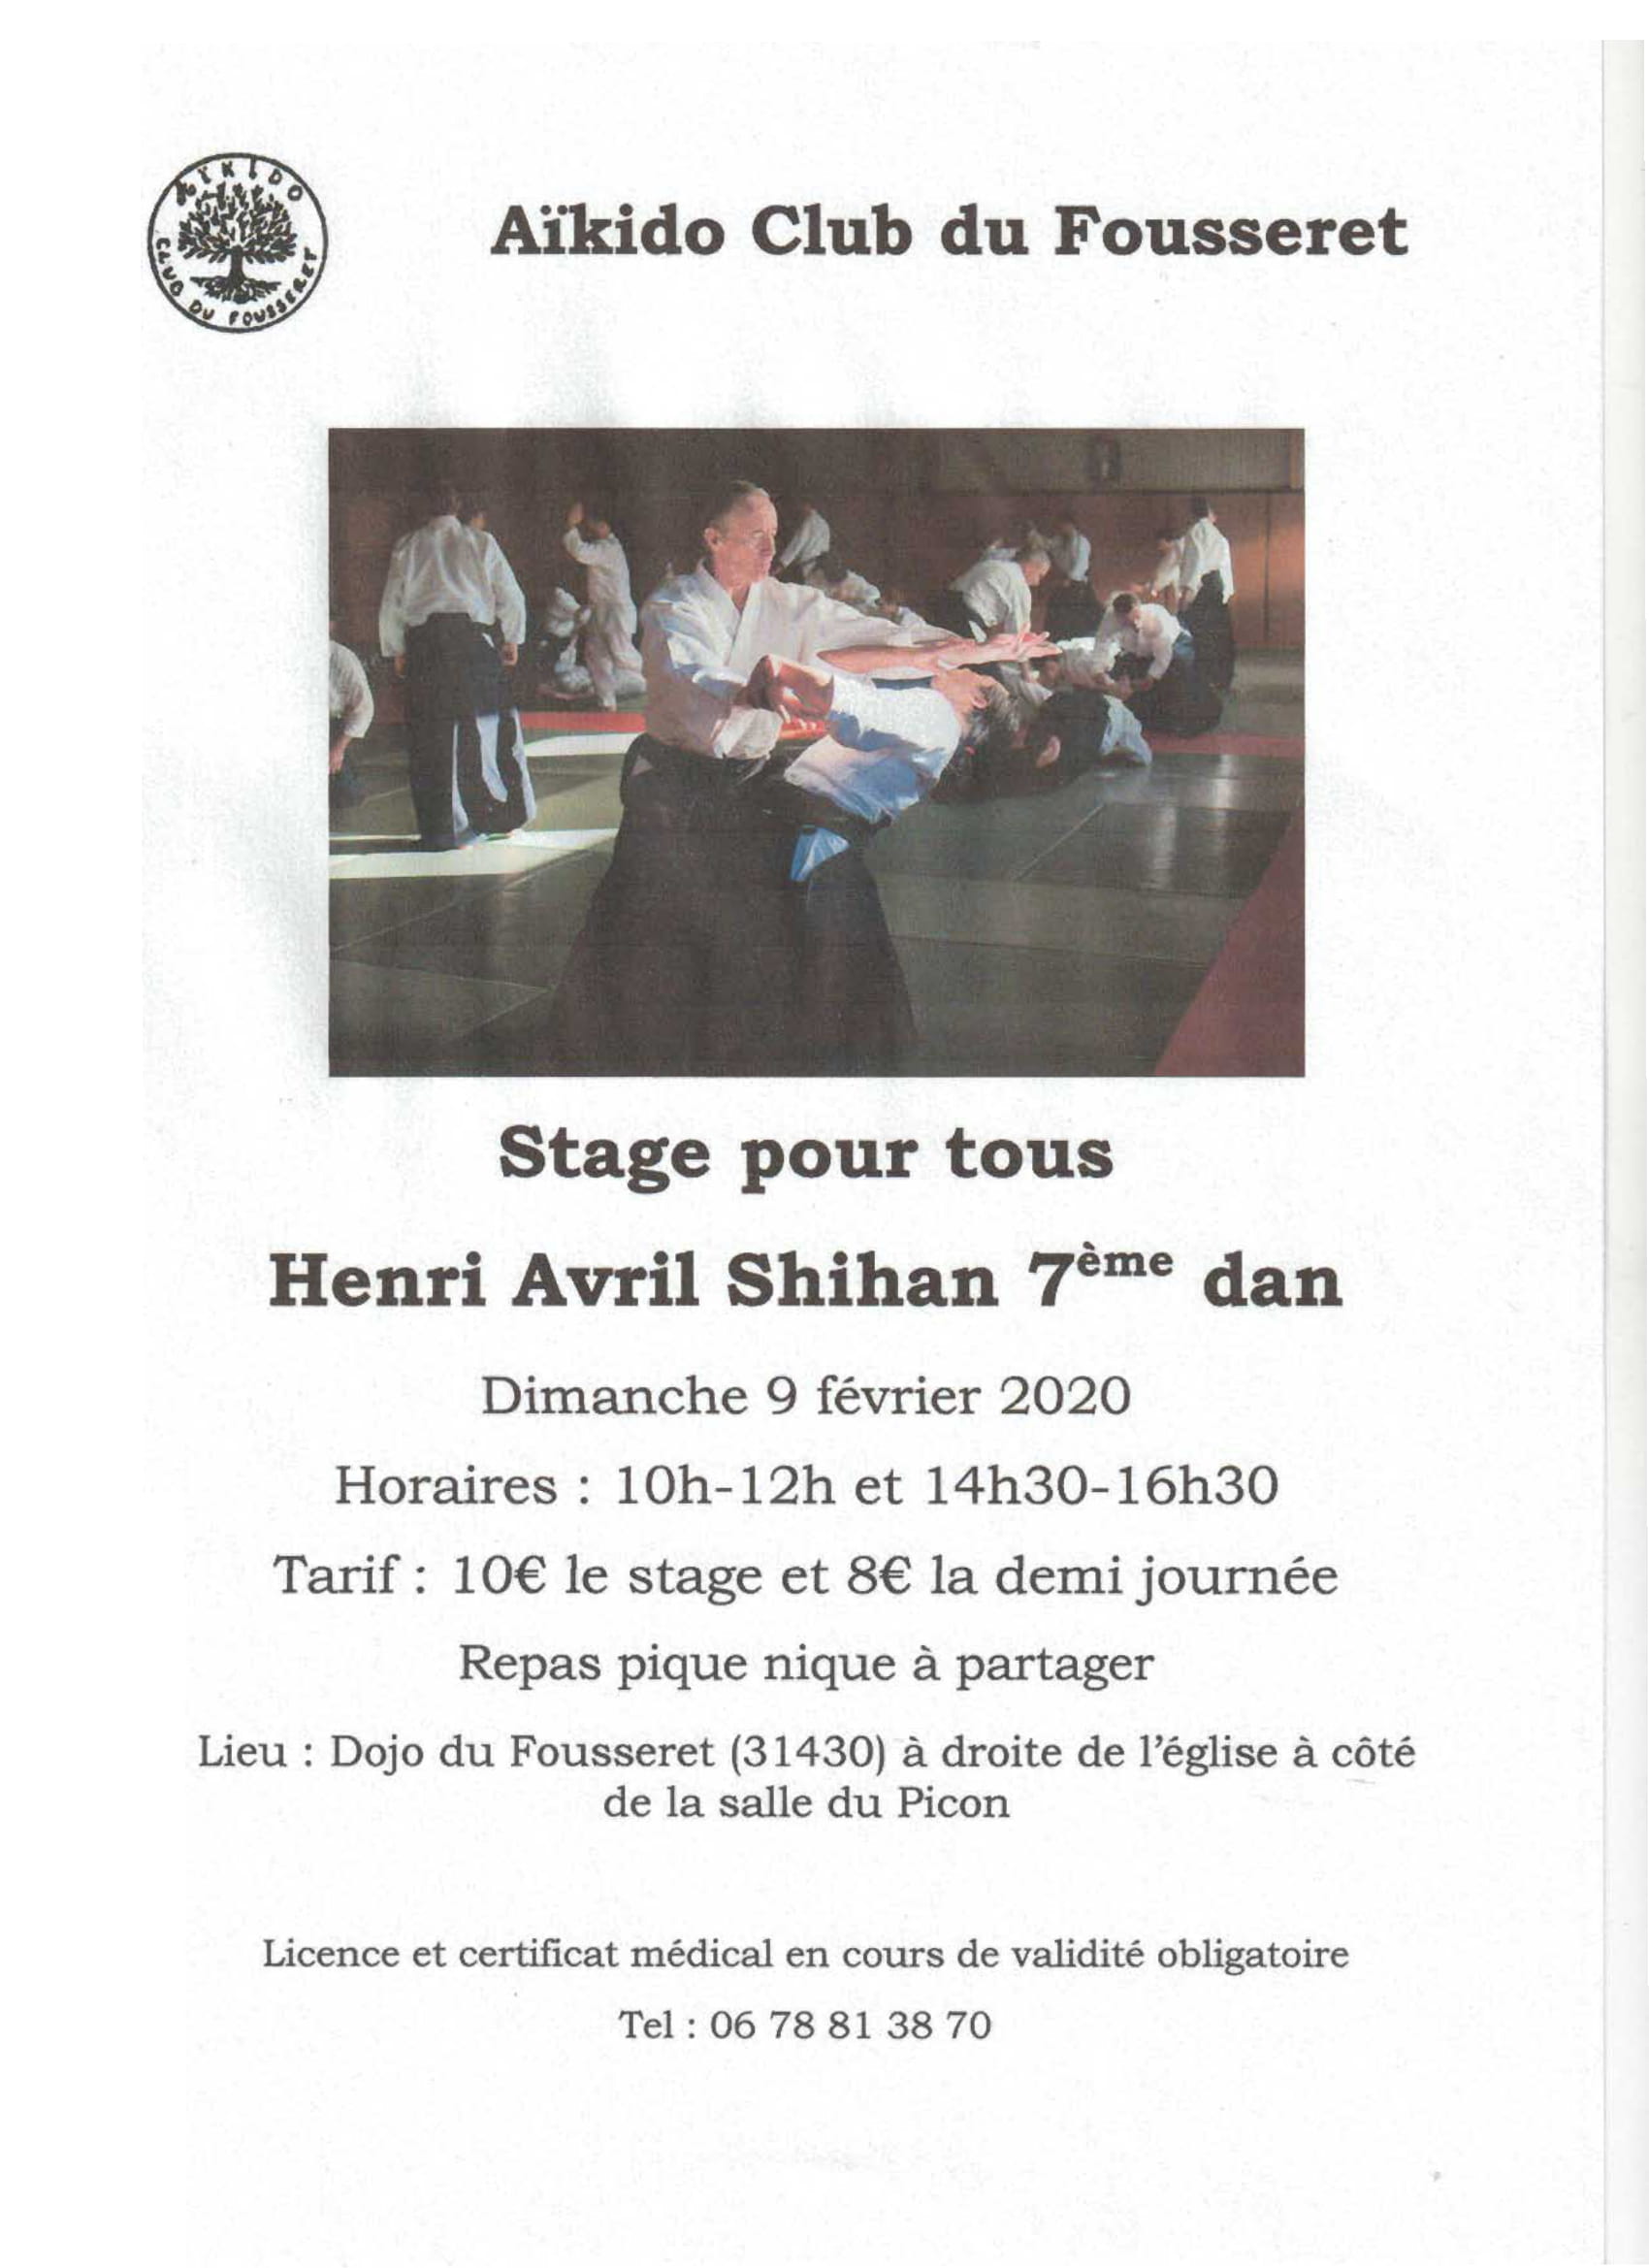 9 février 2020 - Stage avec Henri Avril Shihan 7ème dan au Fousseret